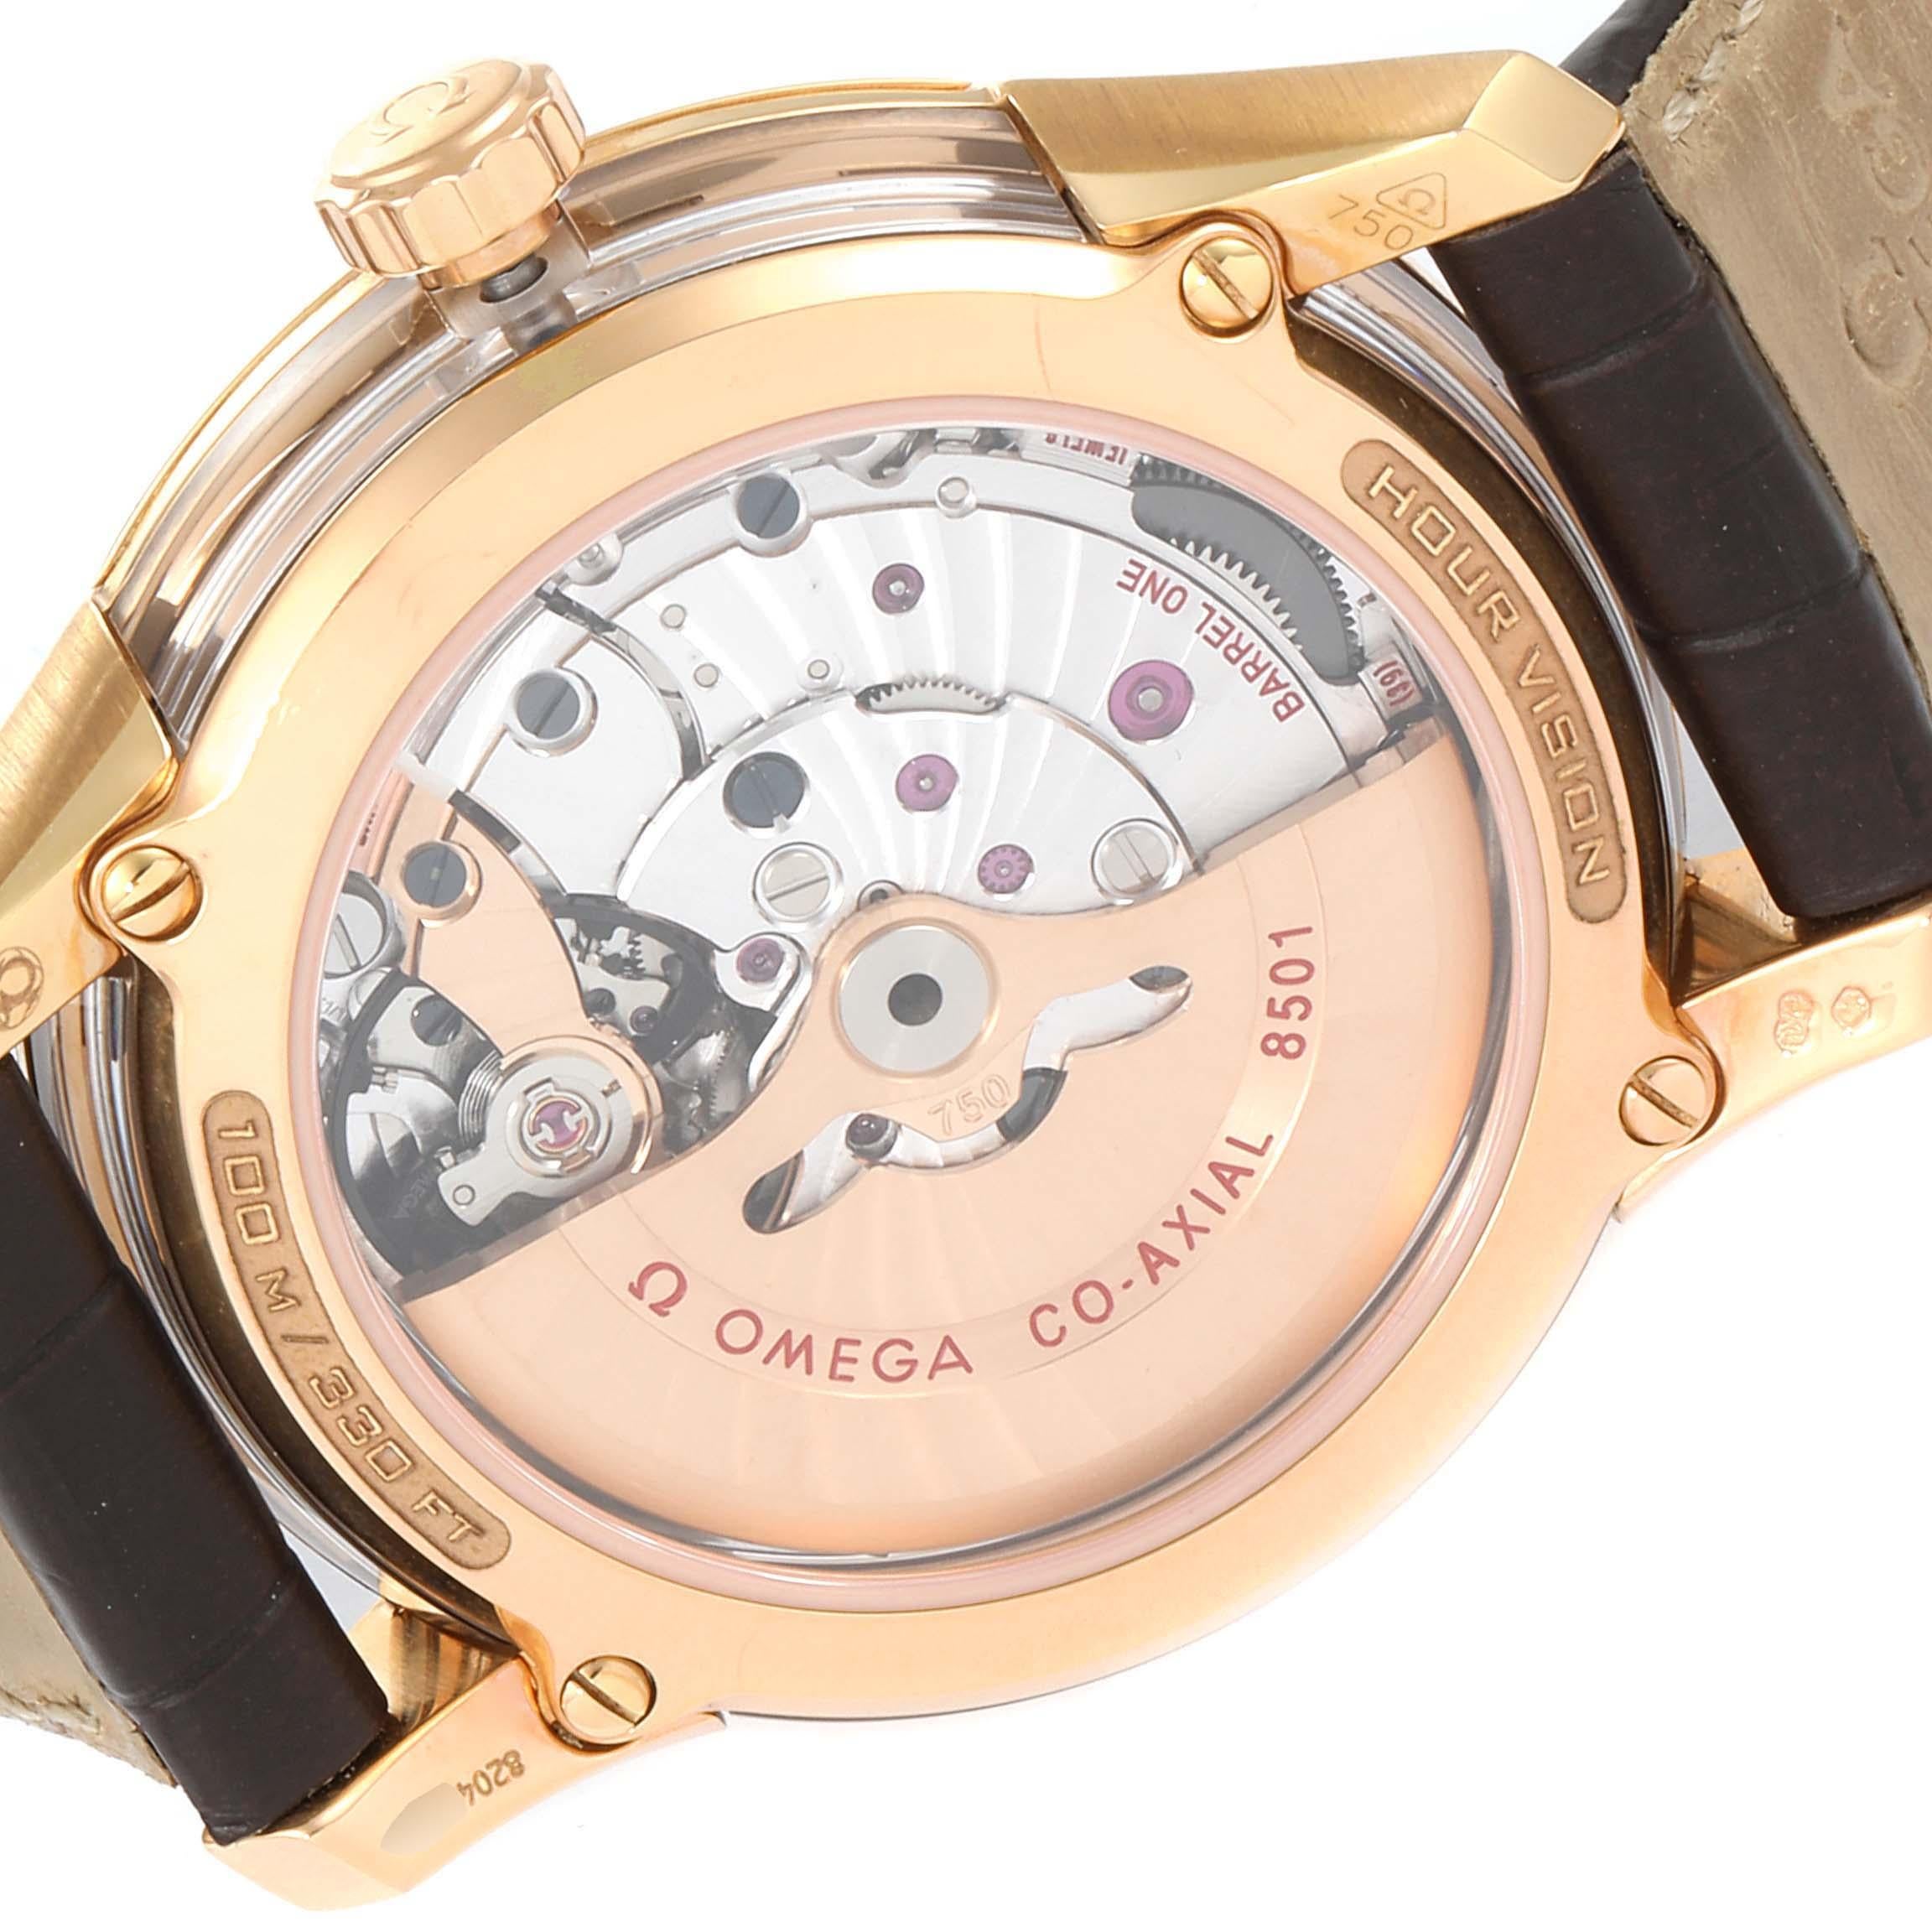 Men's Omega DeVille Hour Vision 18k Rose Gold Watch 431.63.41.21.13.001 Unworn